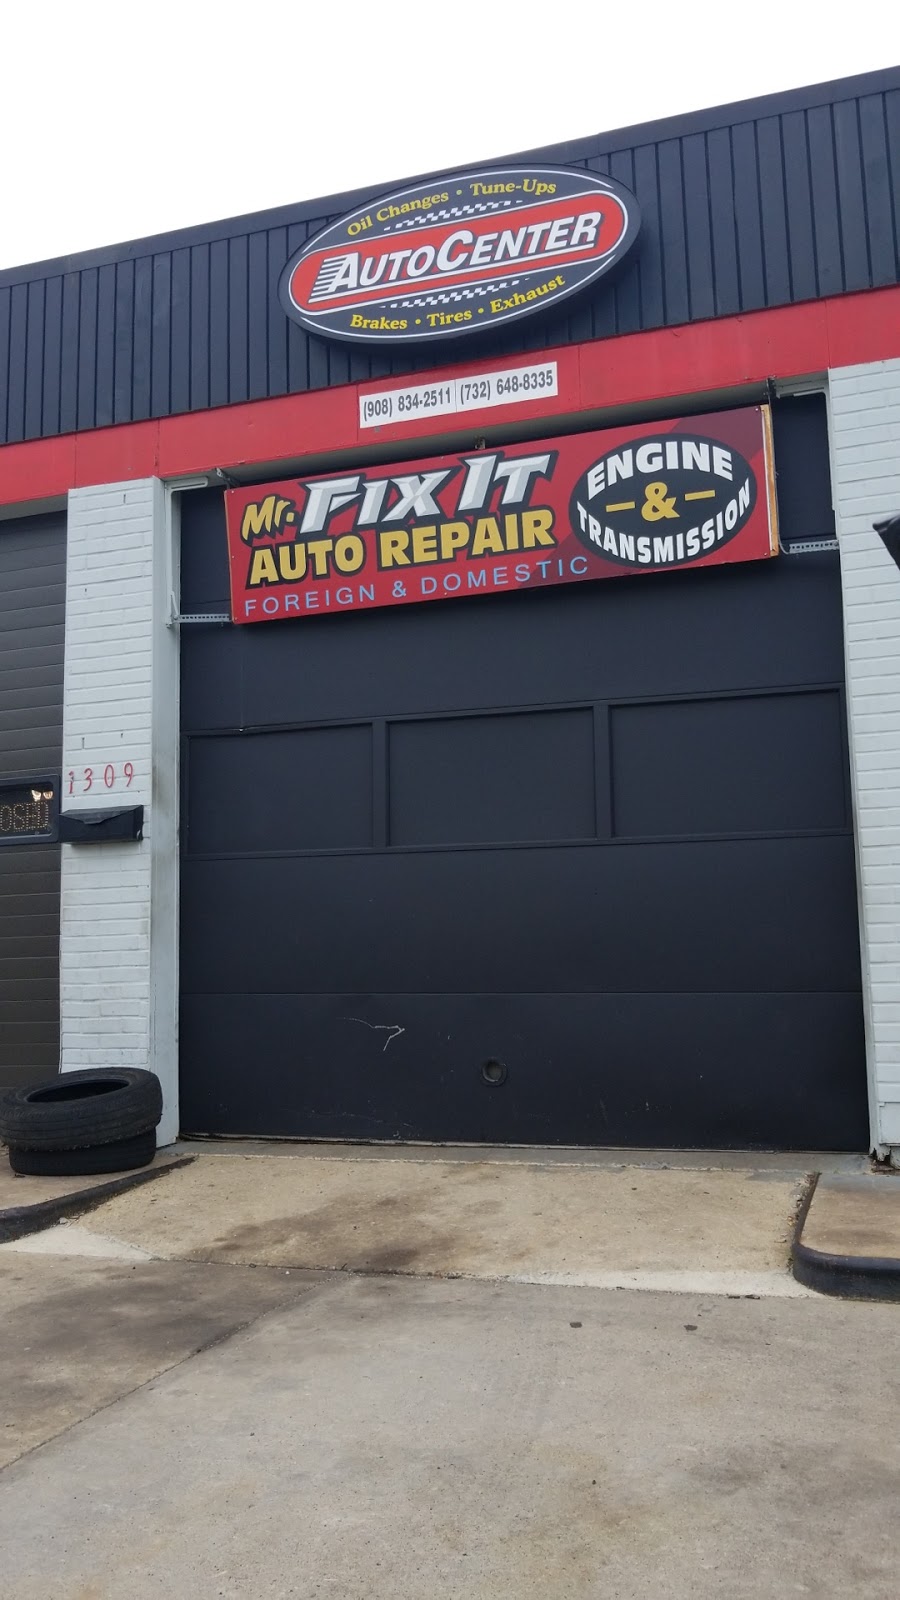 Mr Fix It Auto Repair | 1309 W 7th St, South Plainfield, NJ 07080 | Phone: (908) 834-2511